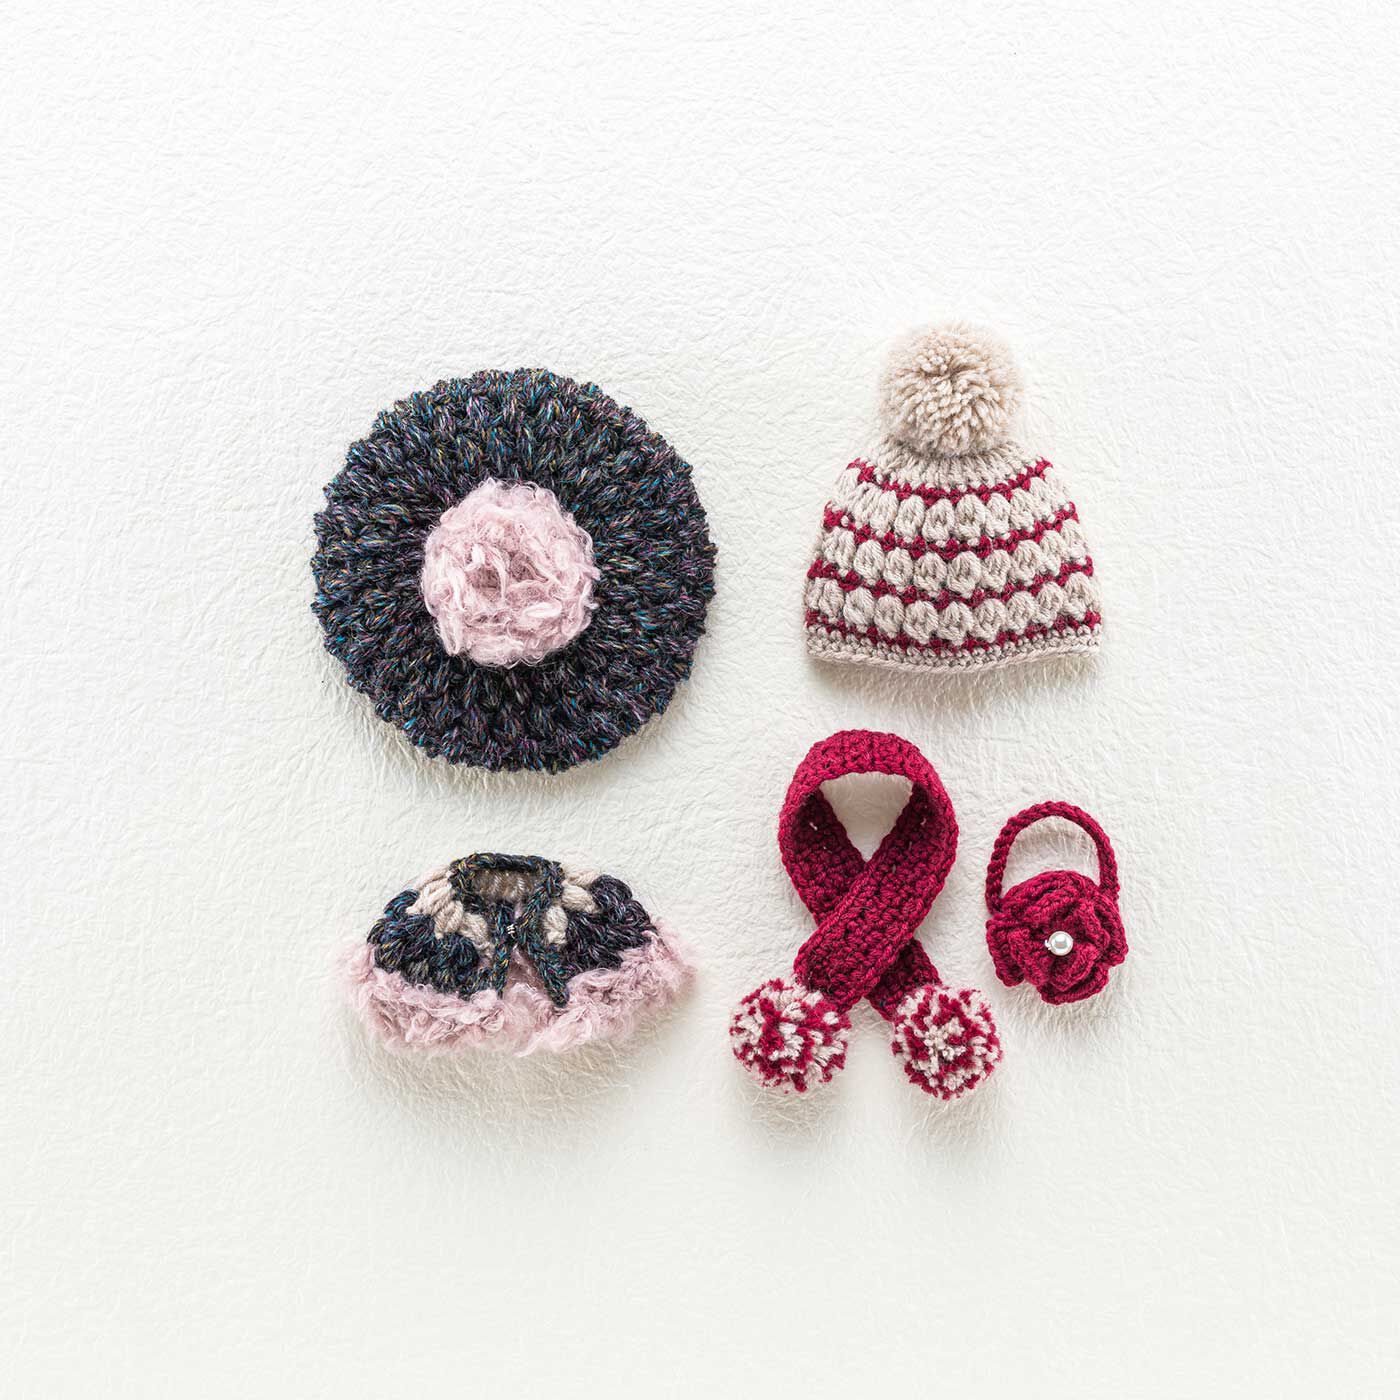 Couturier|寒さが待ち遠しくなる ドール用かぎ針編み帽子と小物のキット|LサイズかMサイズ、どちらかを選んで作れます（画像はMサイズ）。